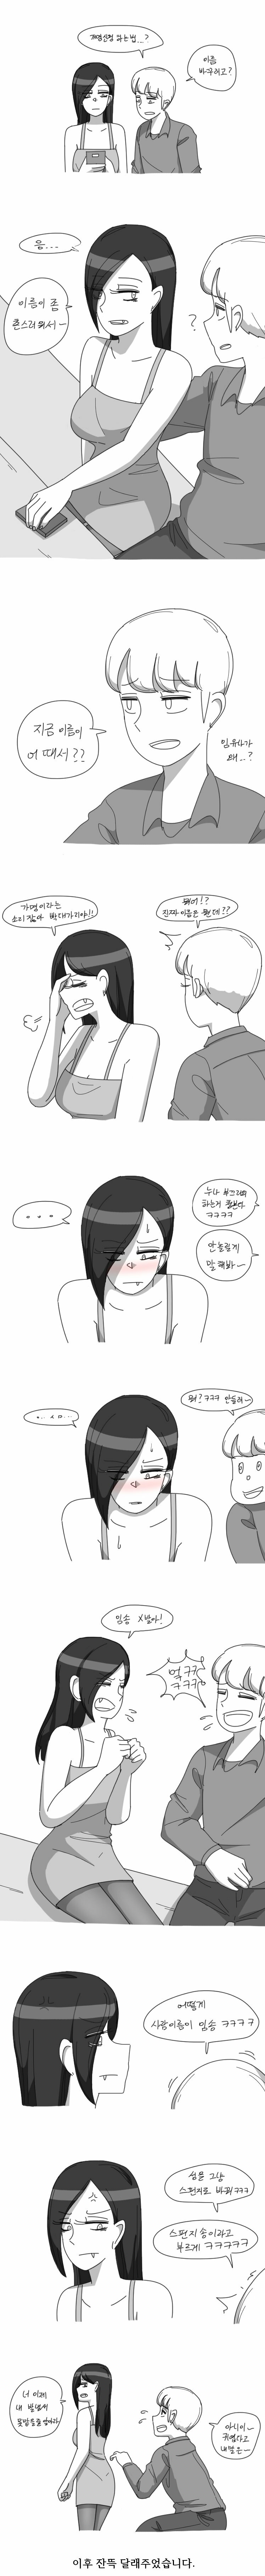 친한 누나가 개명신청 하려는 만화.manhwa